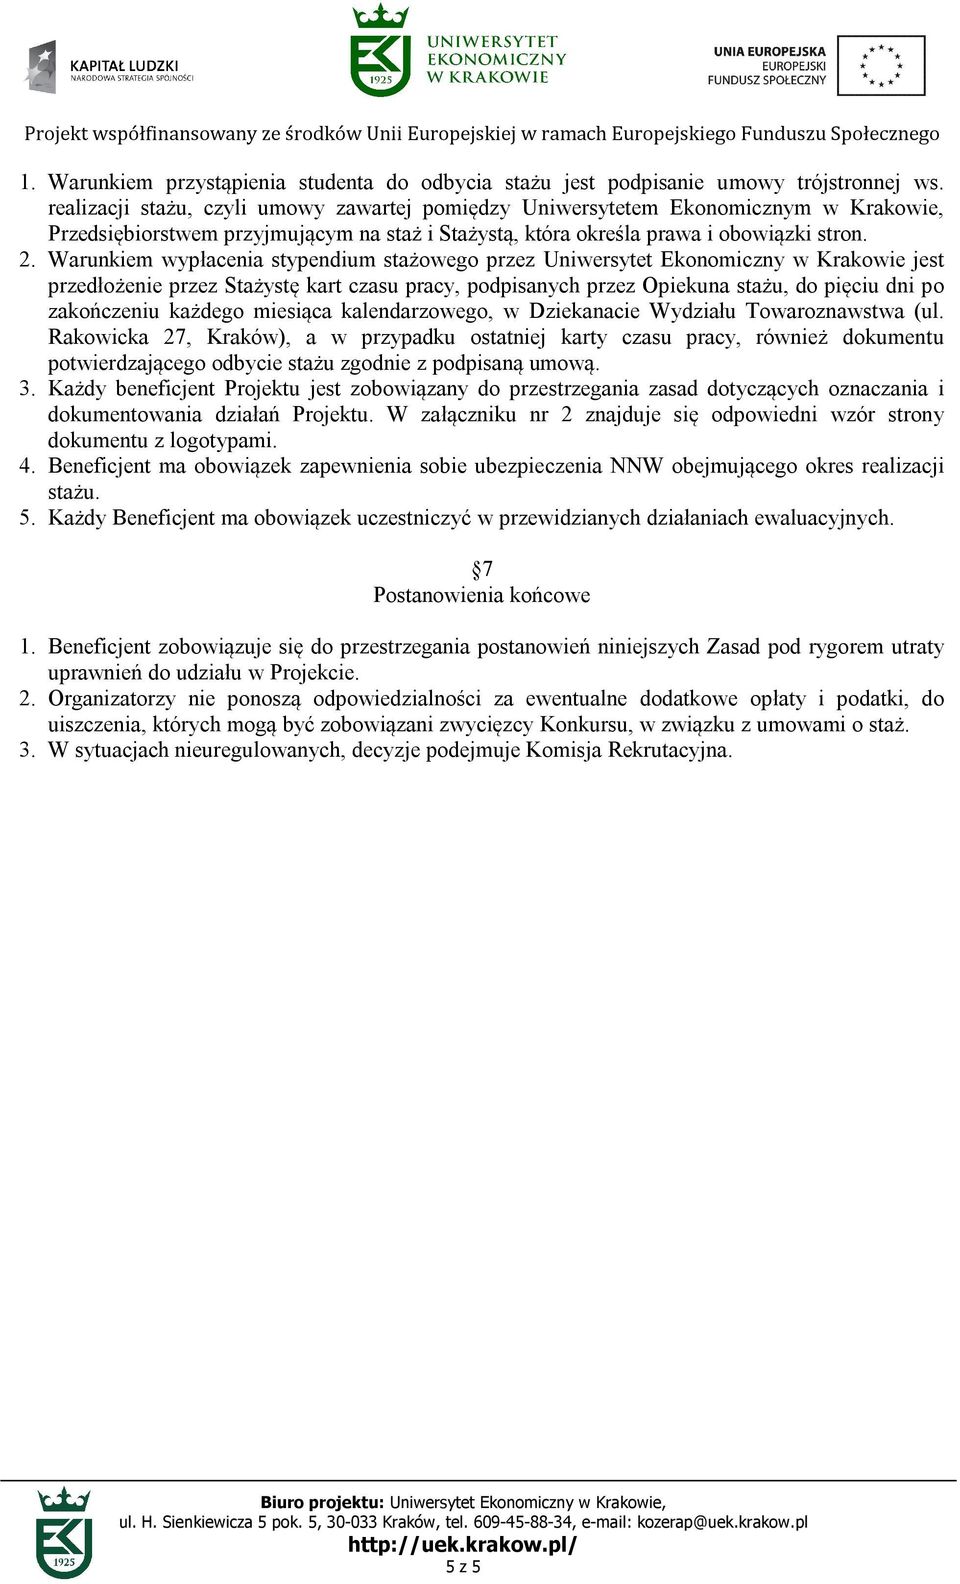 Warunkiem wypłacenia stypendium stażowego przez Uniwersytet Ekonomiczny w Krakowie jest przedłożenie przez Stażystę kart czasu pracy, podpisanych przez Opiekuna stażu, do pięciu dni po zakończeniu